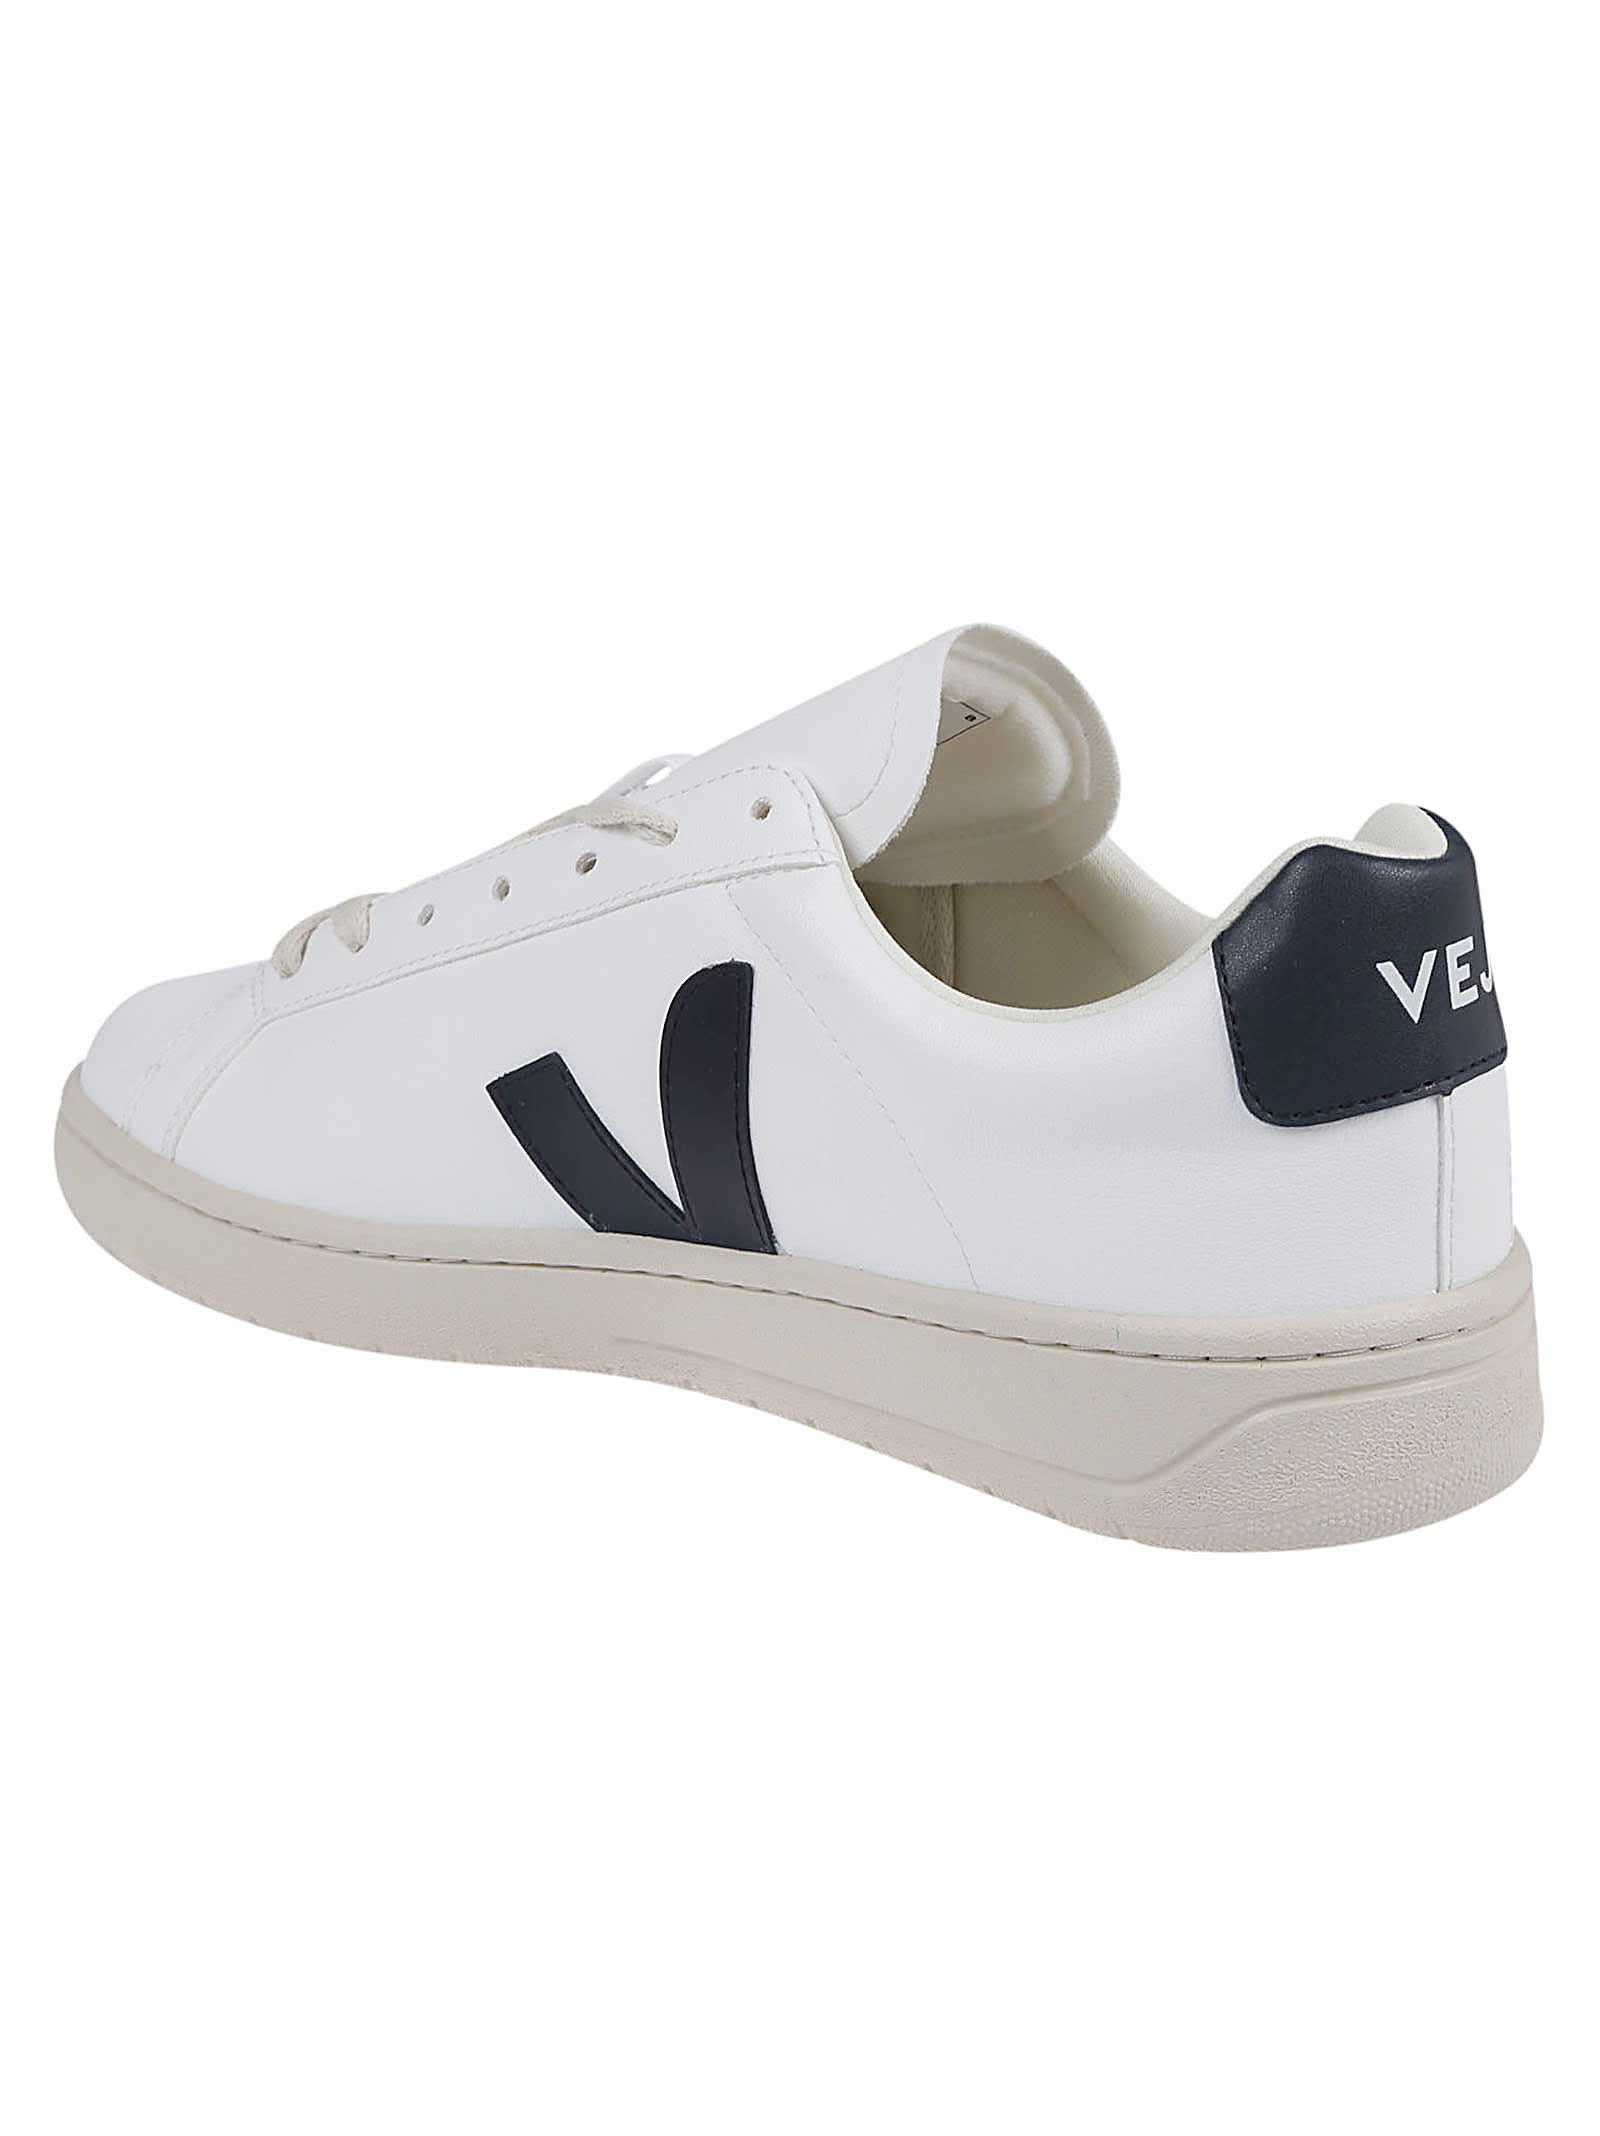 Shop Veja Urca Sneakers In White/nautico